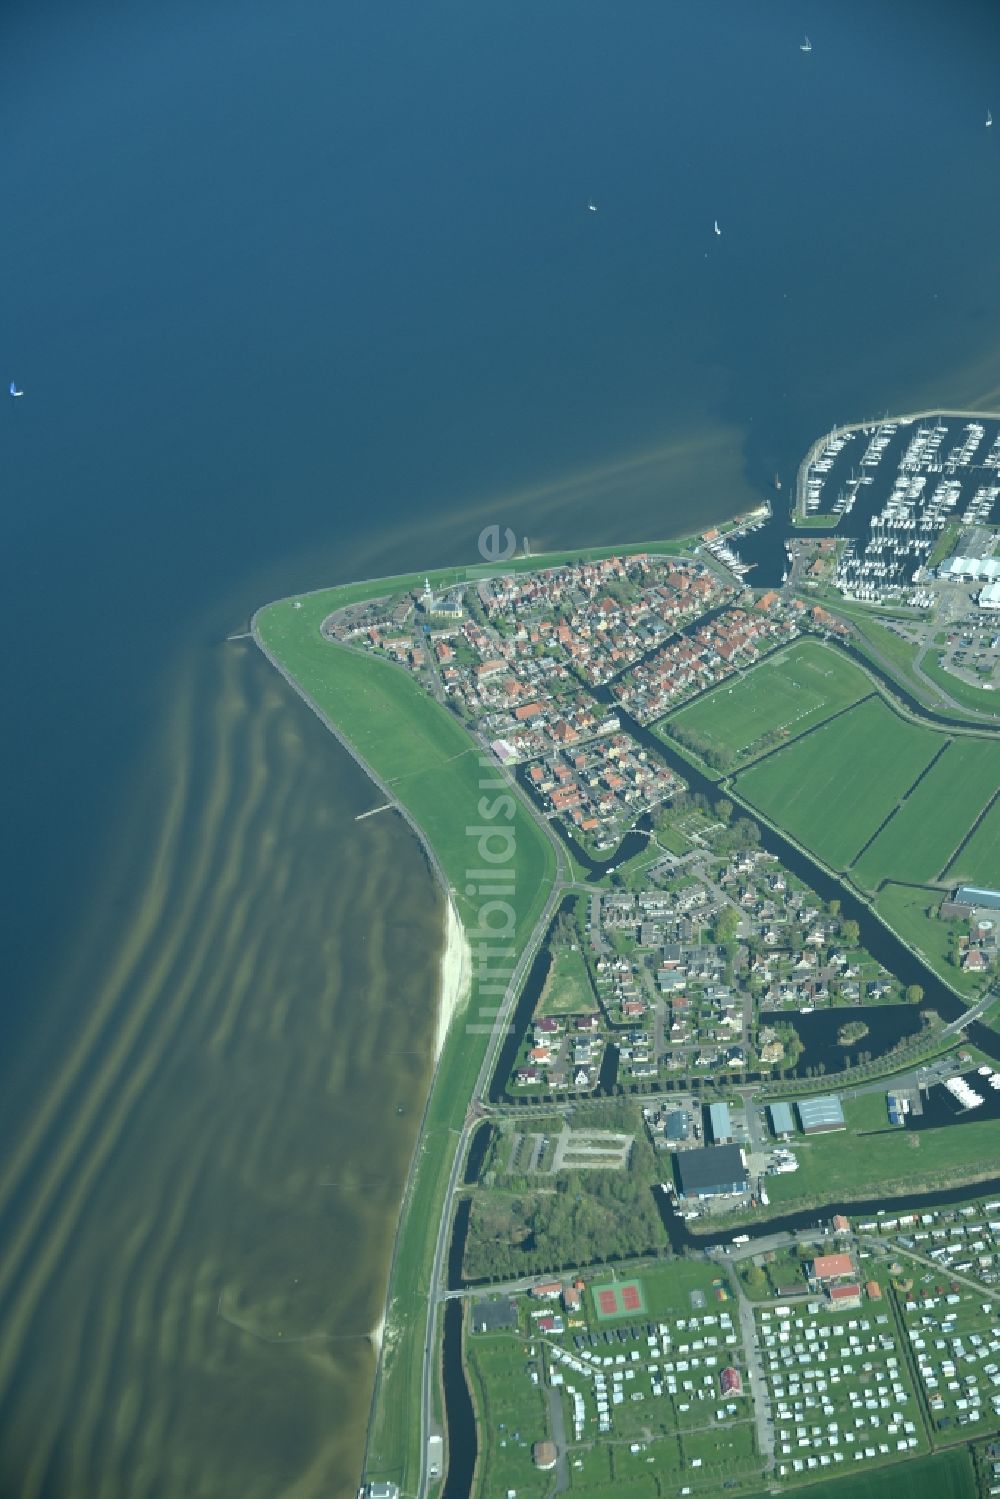 Luftaufnahme Hindeloopen - Dorfansicht im Küstenbereich des IJsselmeeres in Hindeloopen in Friesland, Niederlande